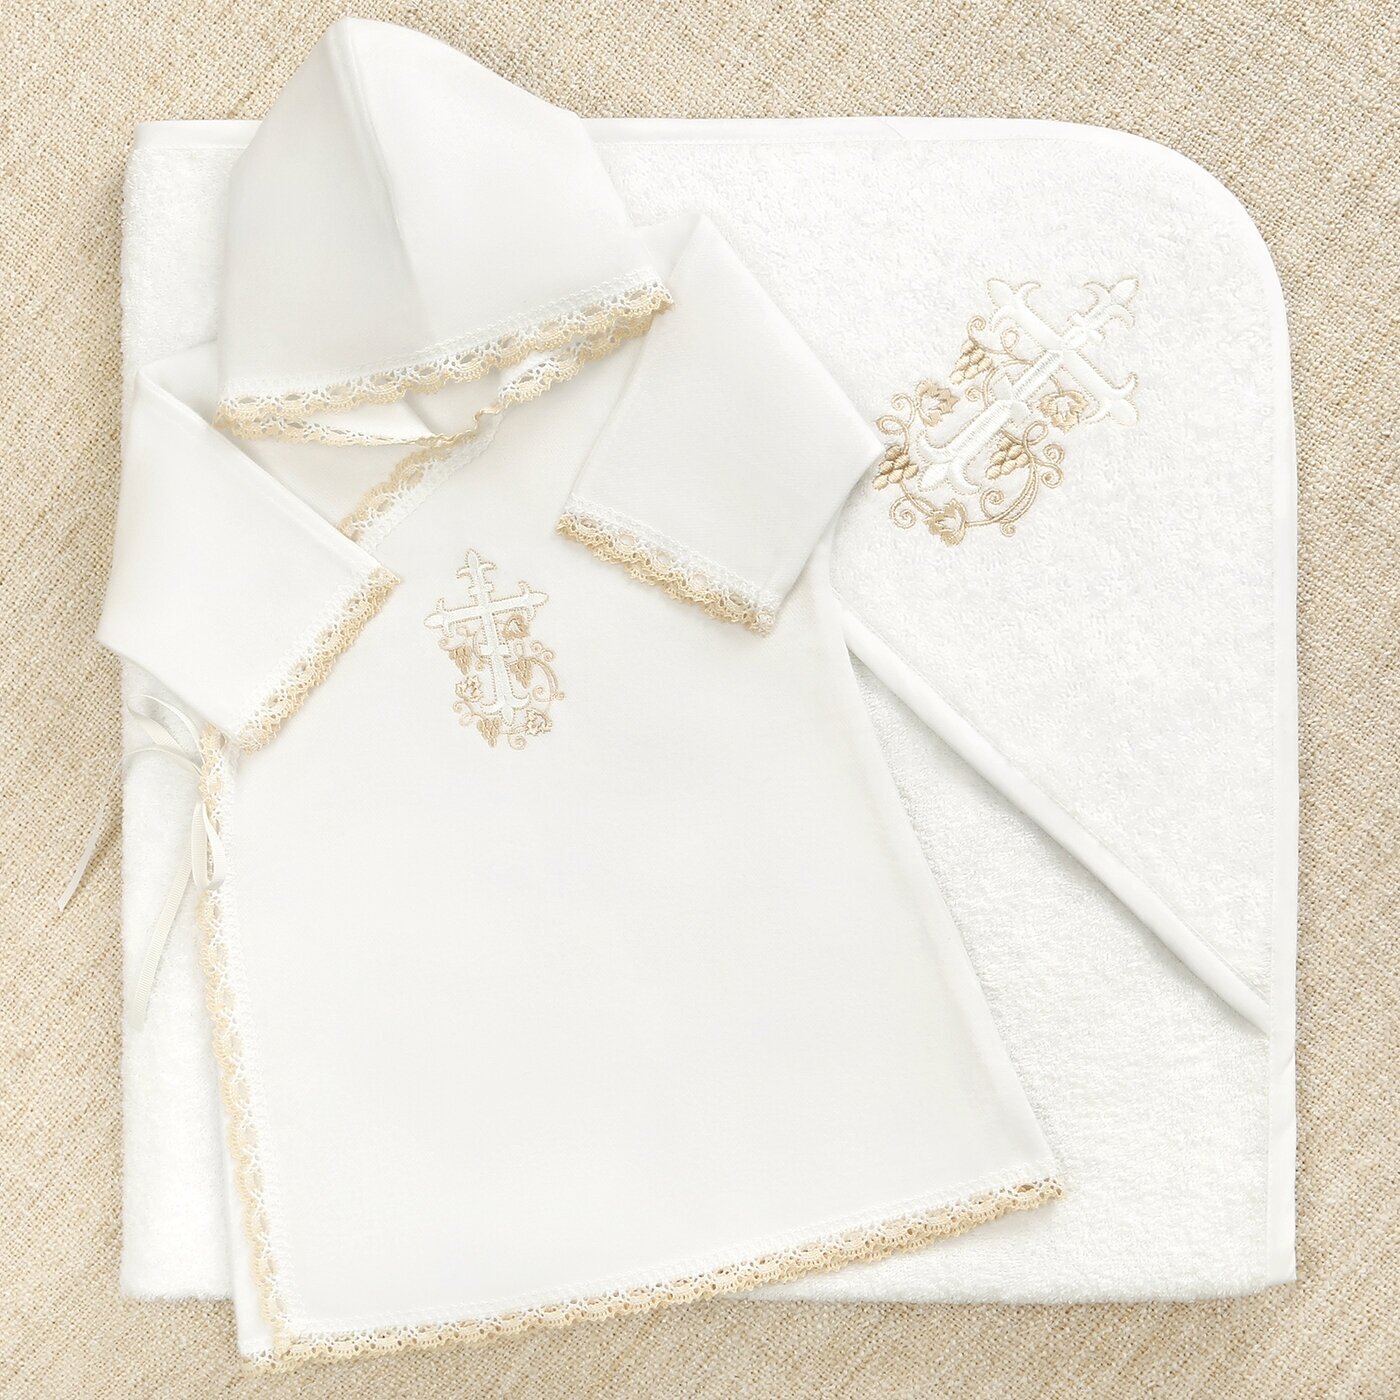 Теплый крестильный набор для Крещения малыша "Бежевый лучик" с махровым полотенцем